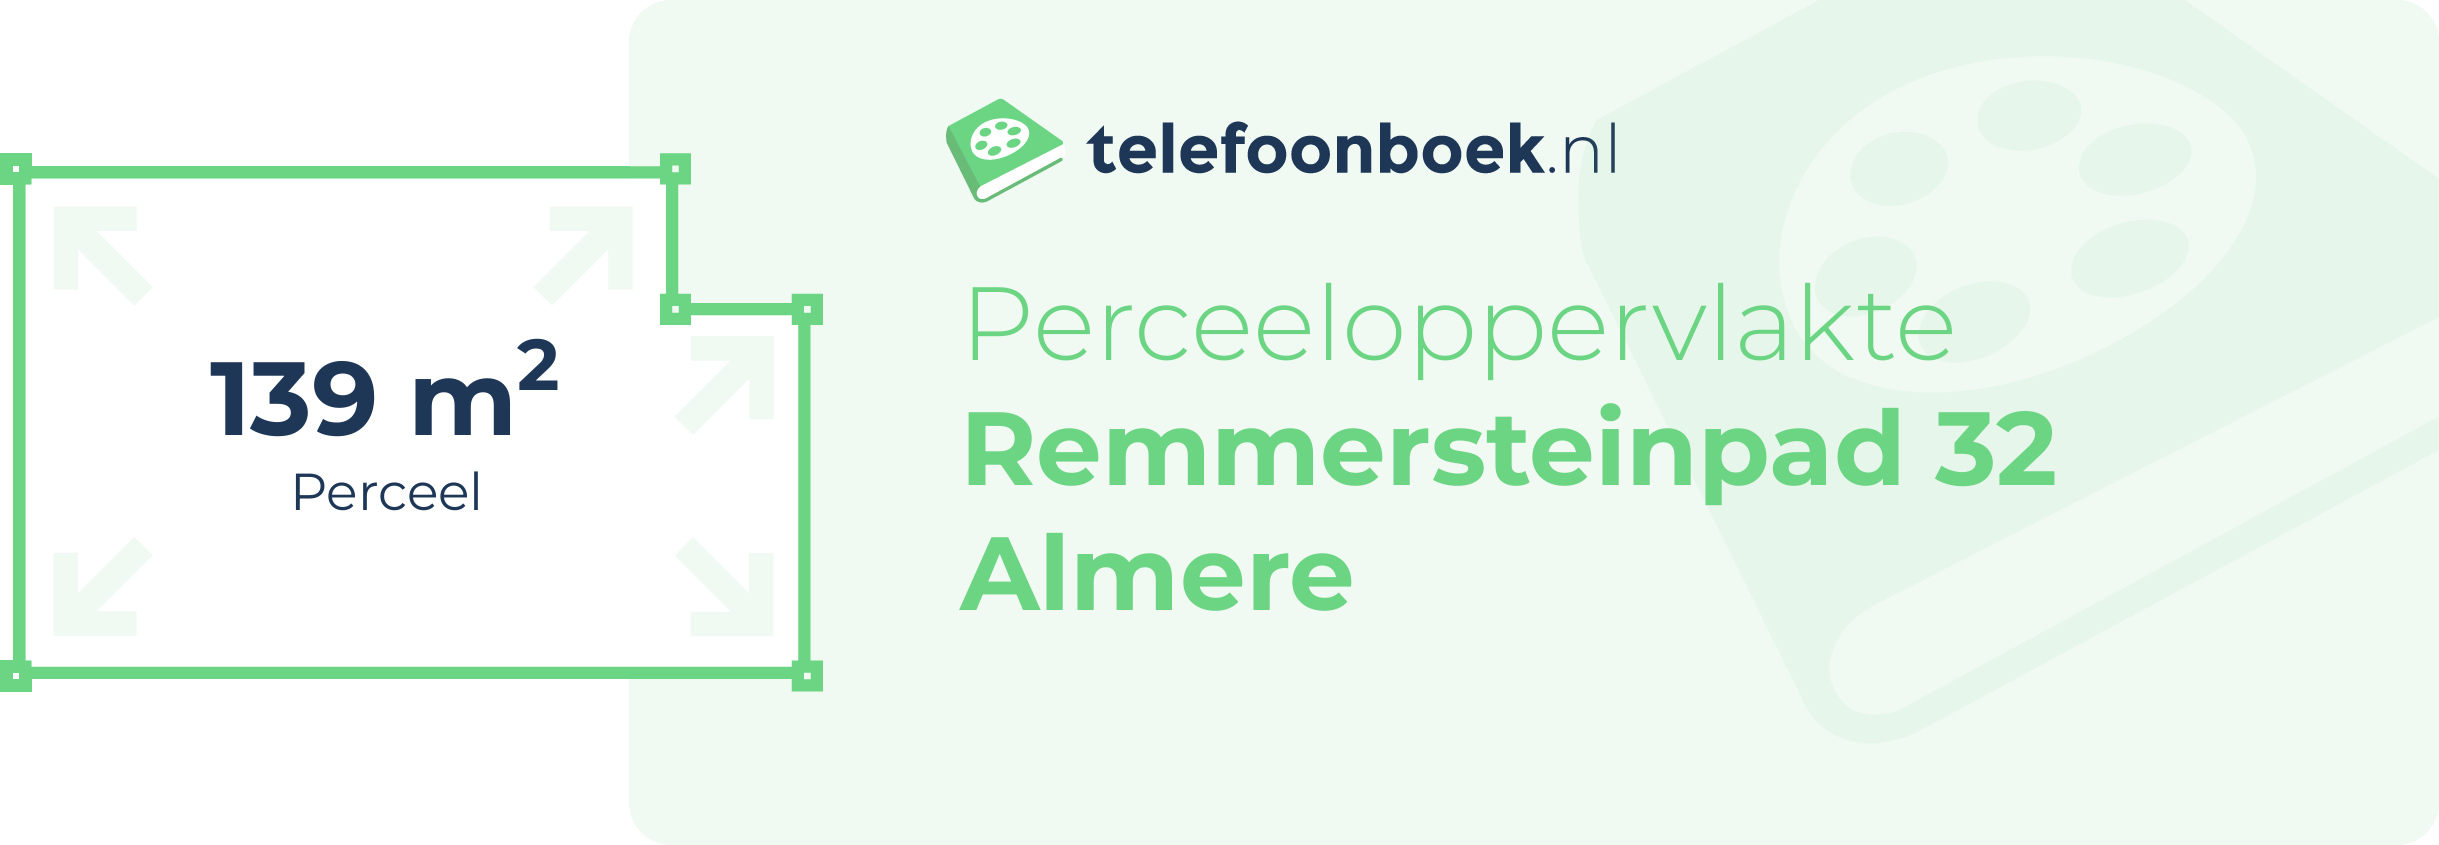 Perceeloppervlakte Remmersteinpad 32 Almere